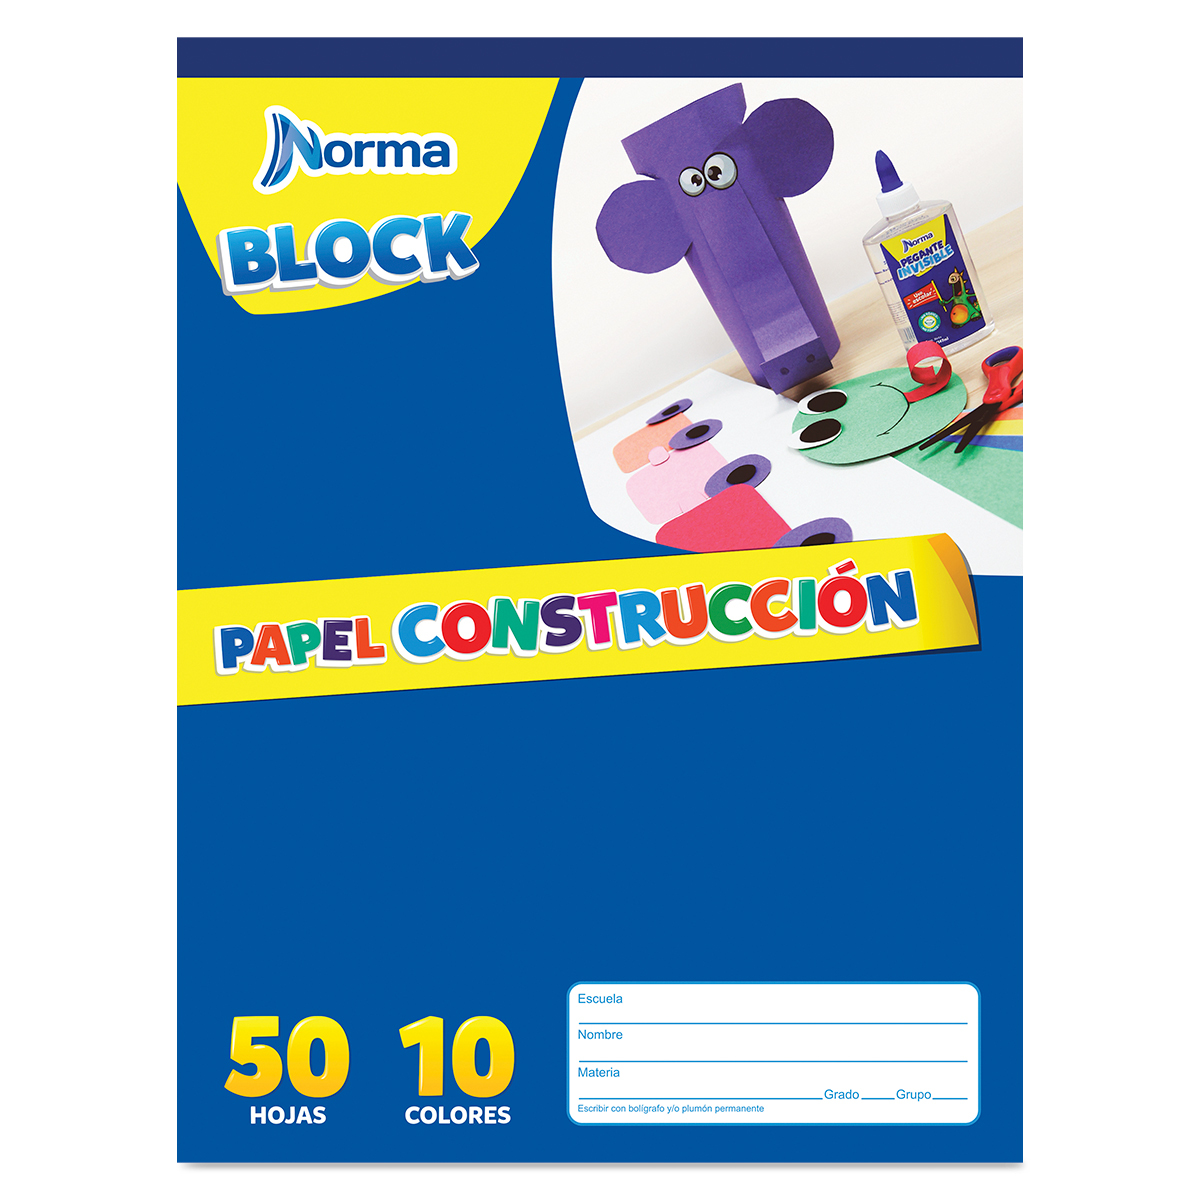 BLOCK CARTA NORMA PAPEL DE CONSTRUCCIÓN (COLORES, 80 HOJAS)